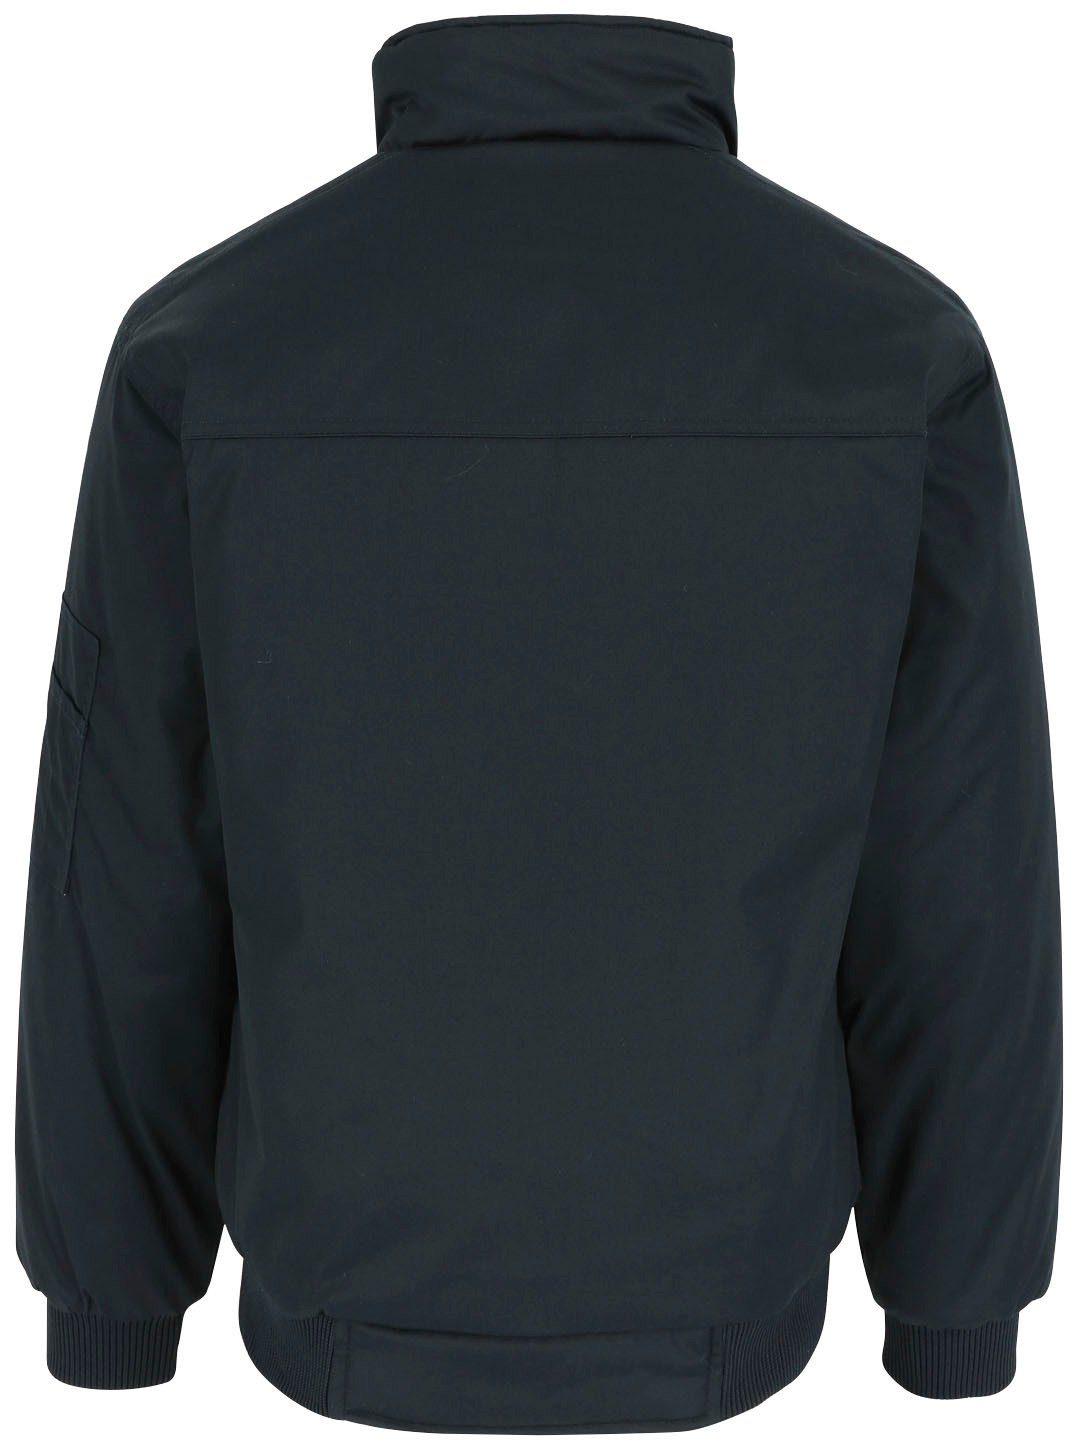 Jacke Herock mit Taschen, Wasserabweisend Typhon Arbeitsjacke viele robust, viele Fleece-Kragen, marine Farben